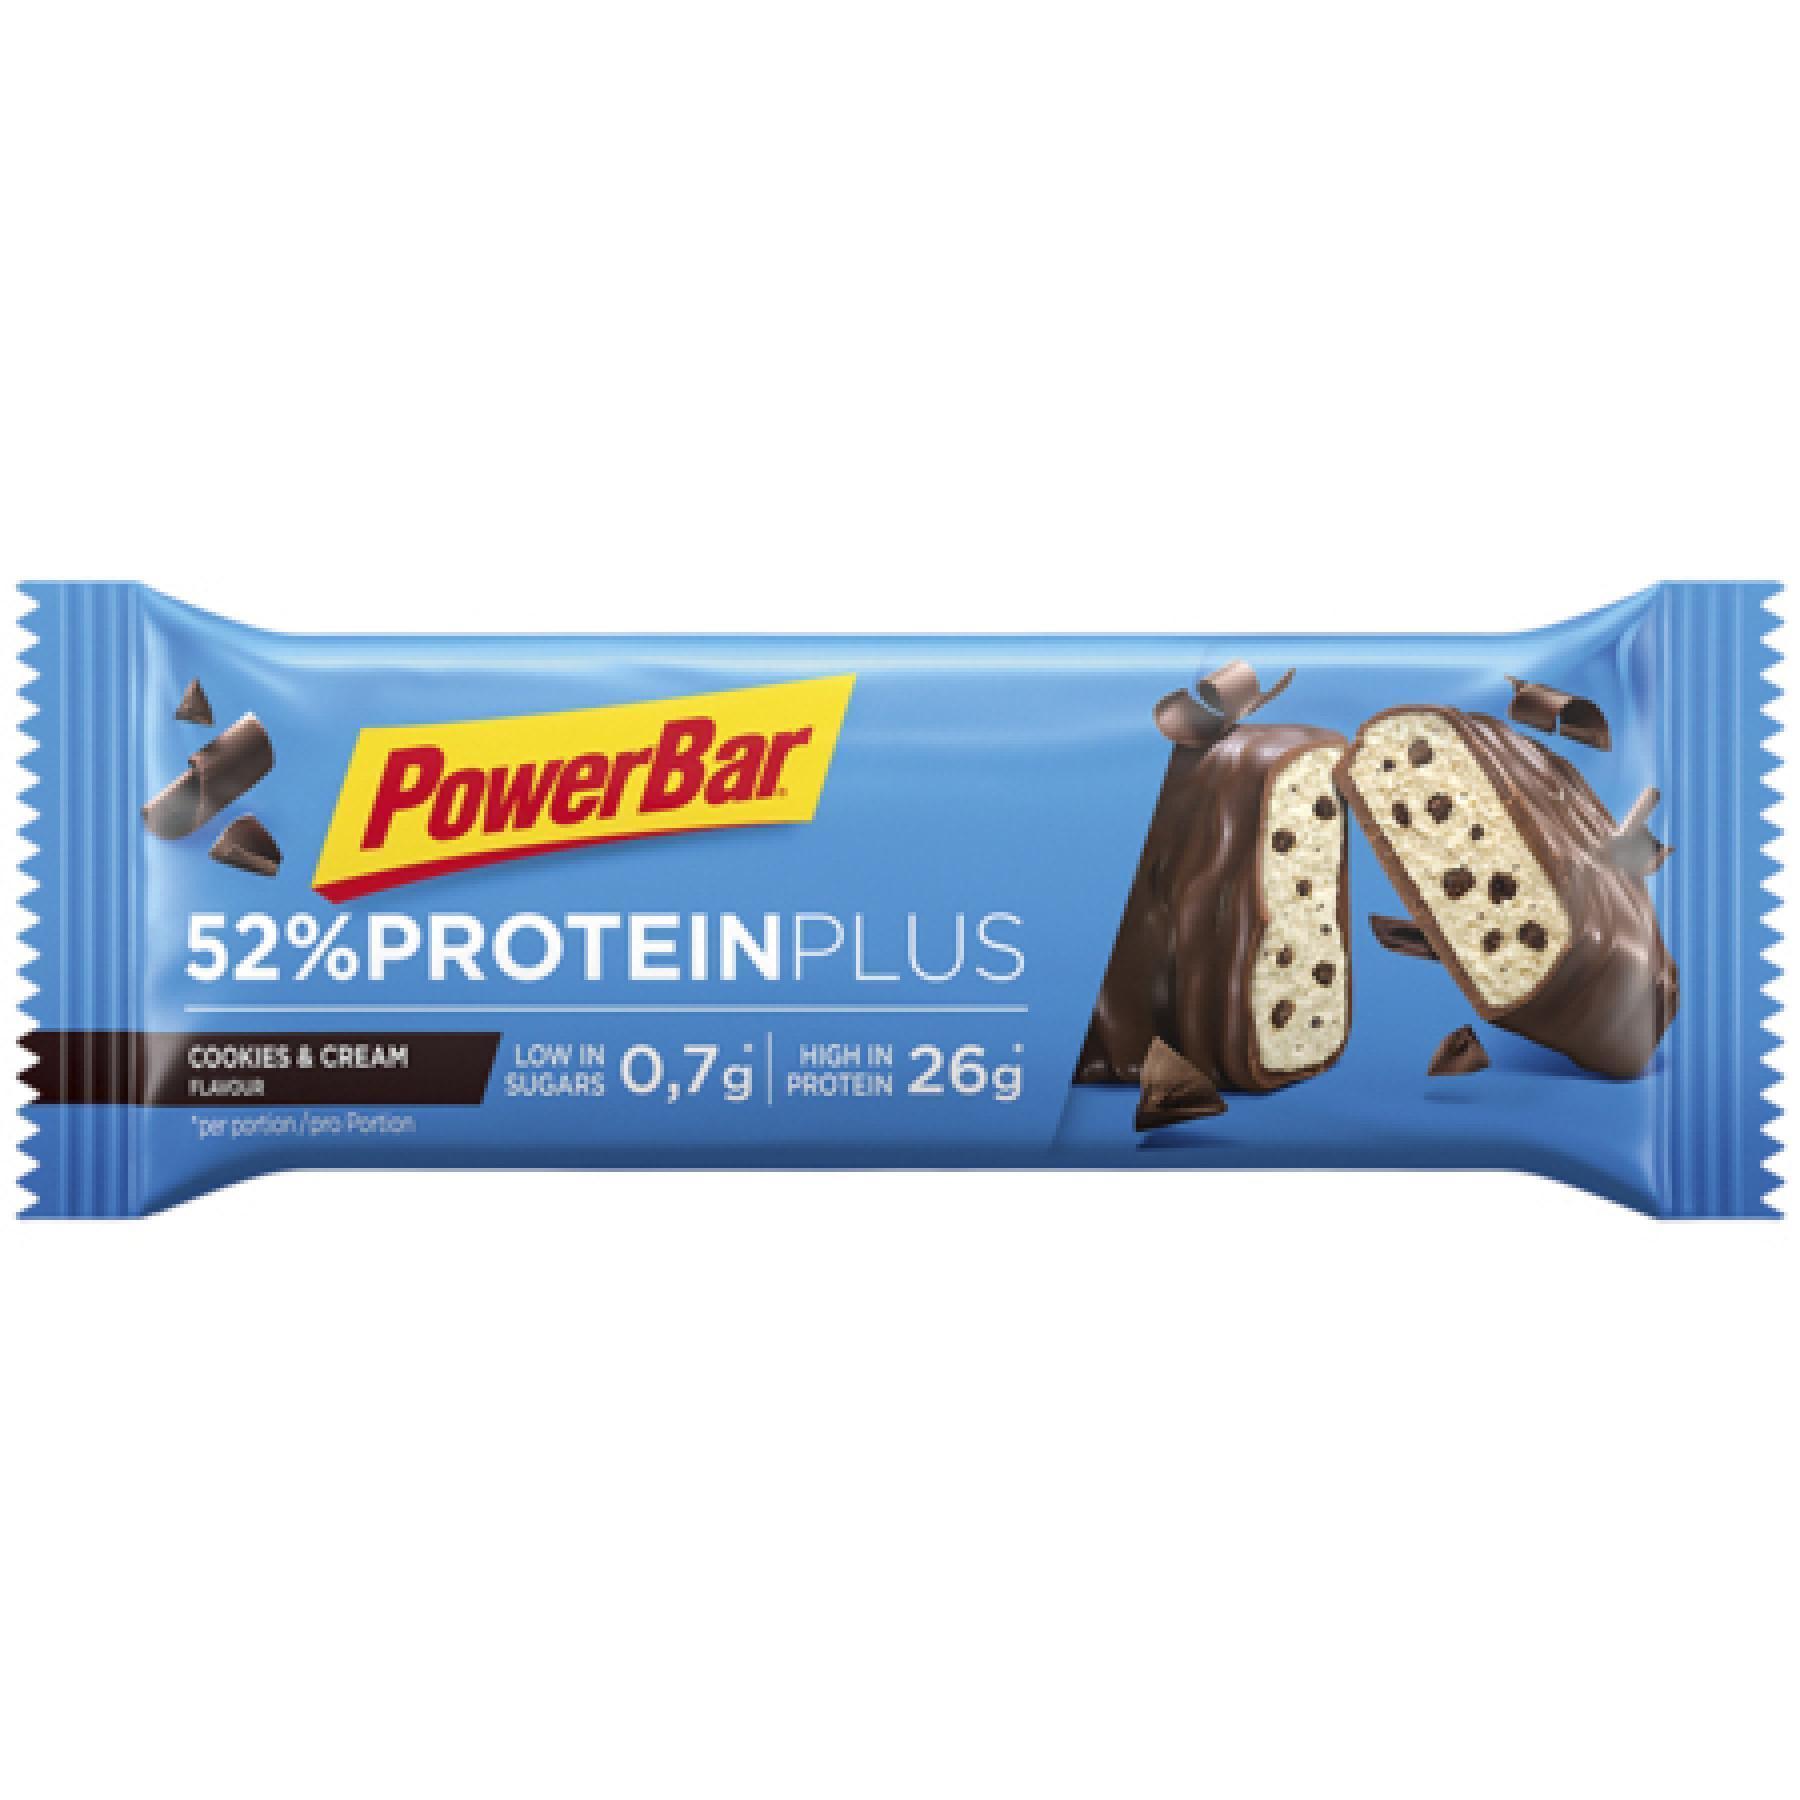 Confezione da 20 barrette PowerBar 52% ProteinPlus Low Sugar Cookies & Cream